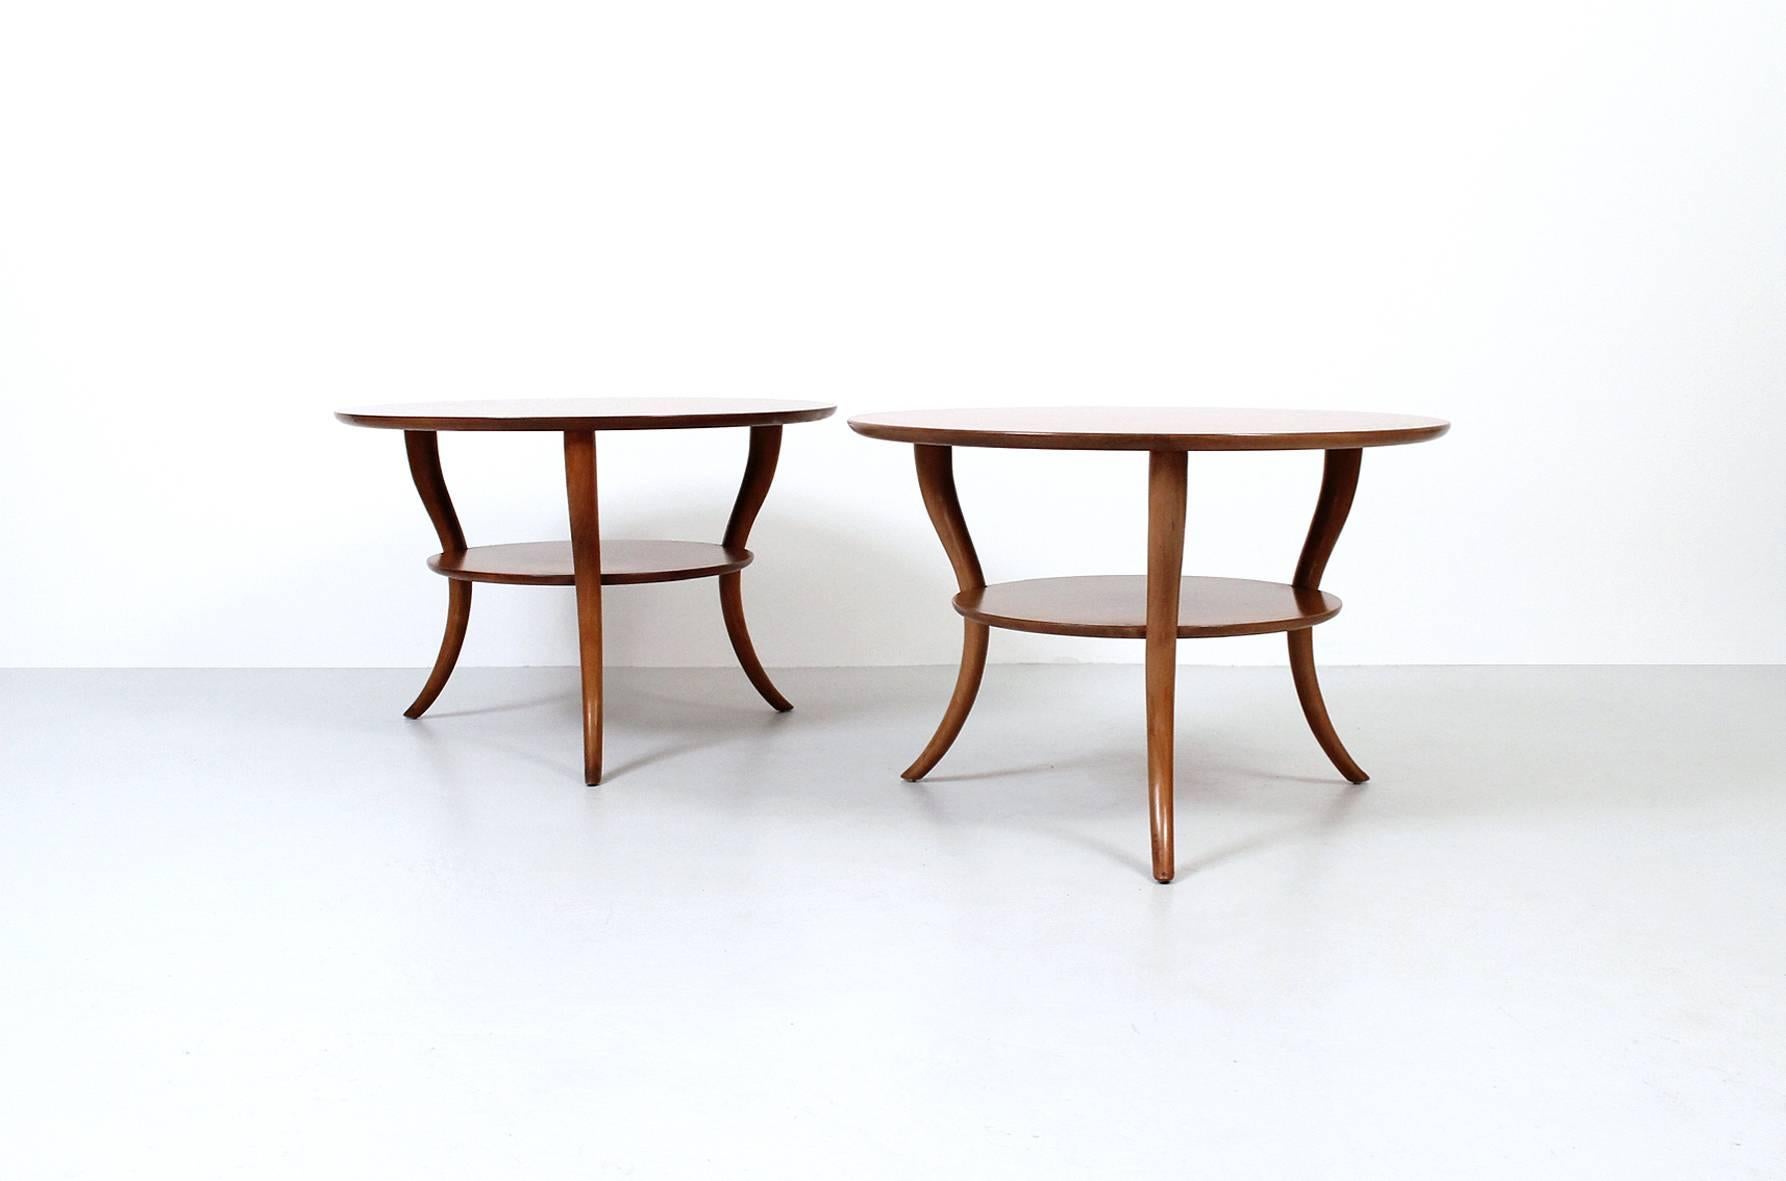 Pair of saber leg side tables designed by T.H. Robsjohn-Gibbings for Widdicomb.